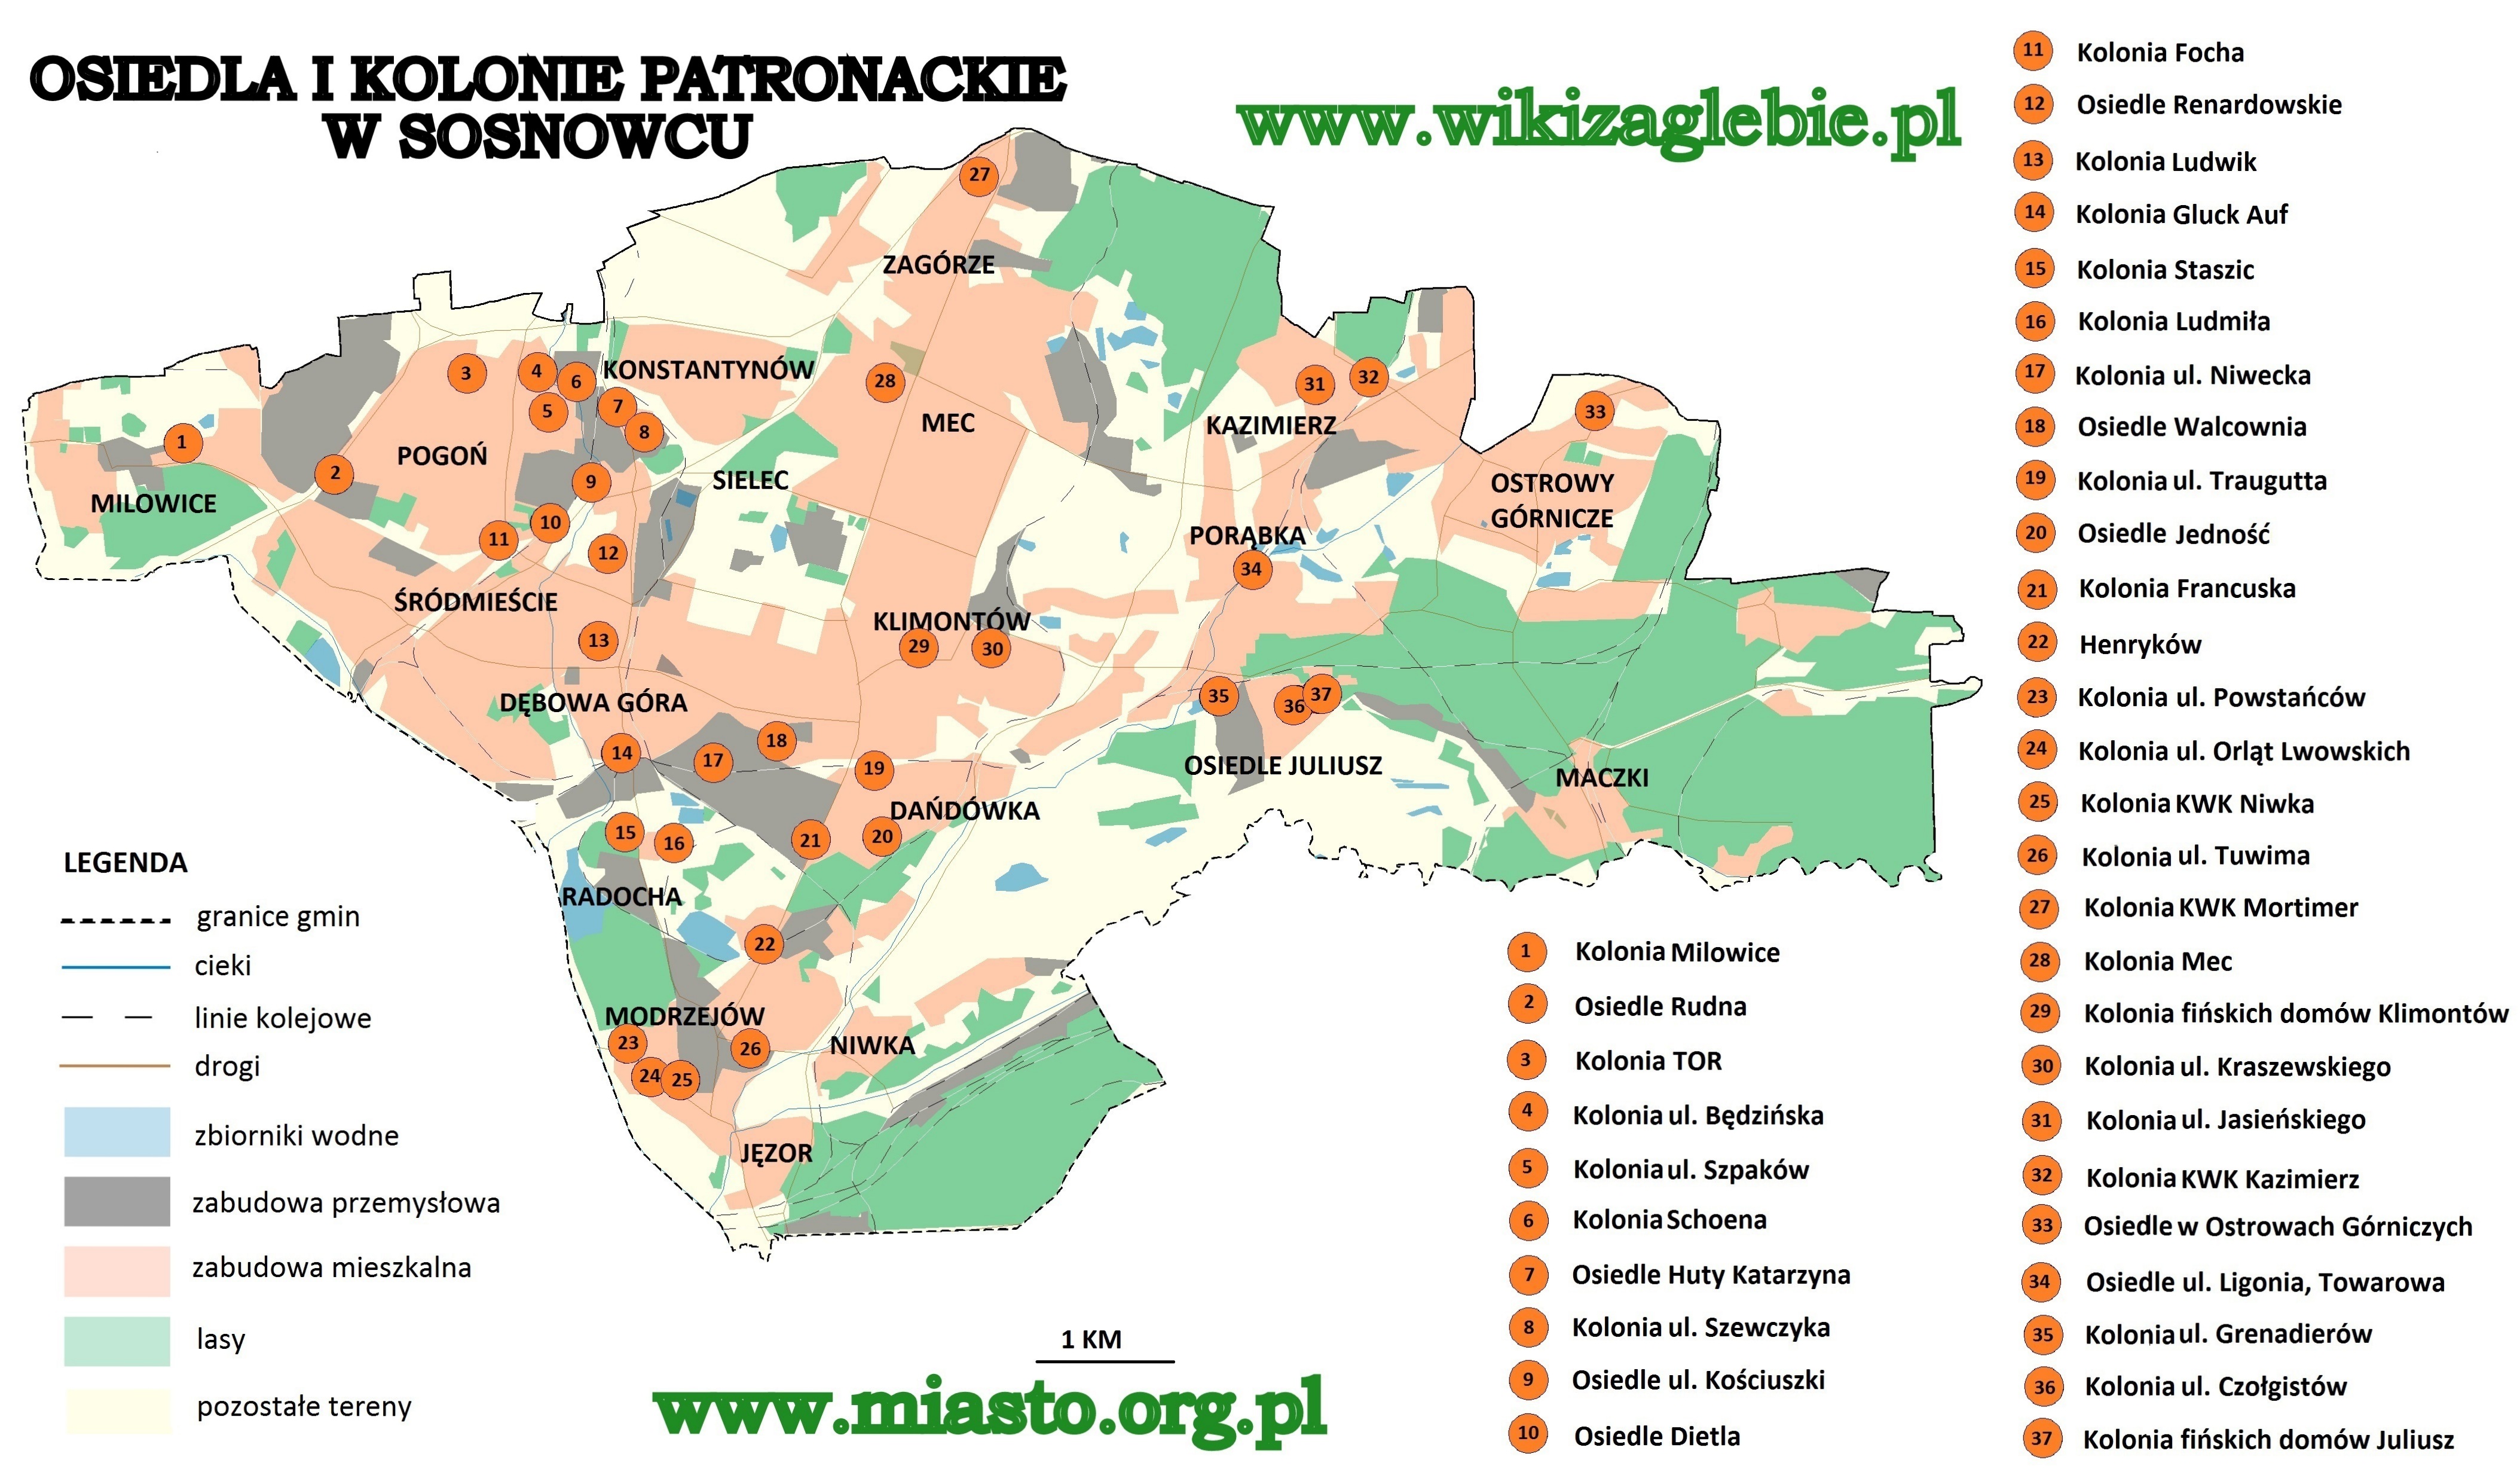 SOSNOWIEC - Mapa Osiedli i Kolonii Patronackich.jpg